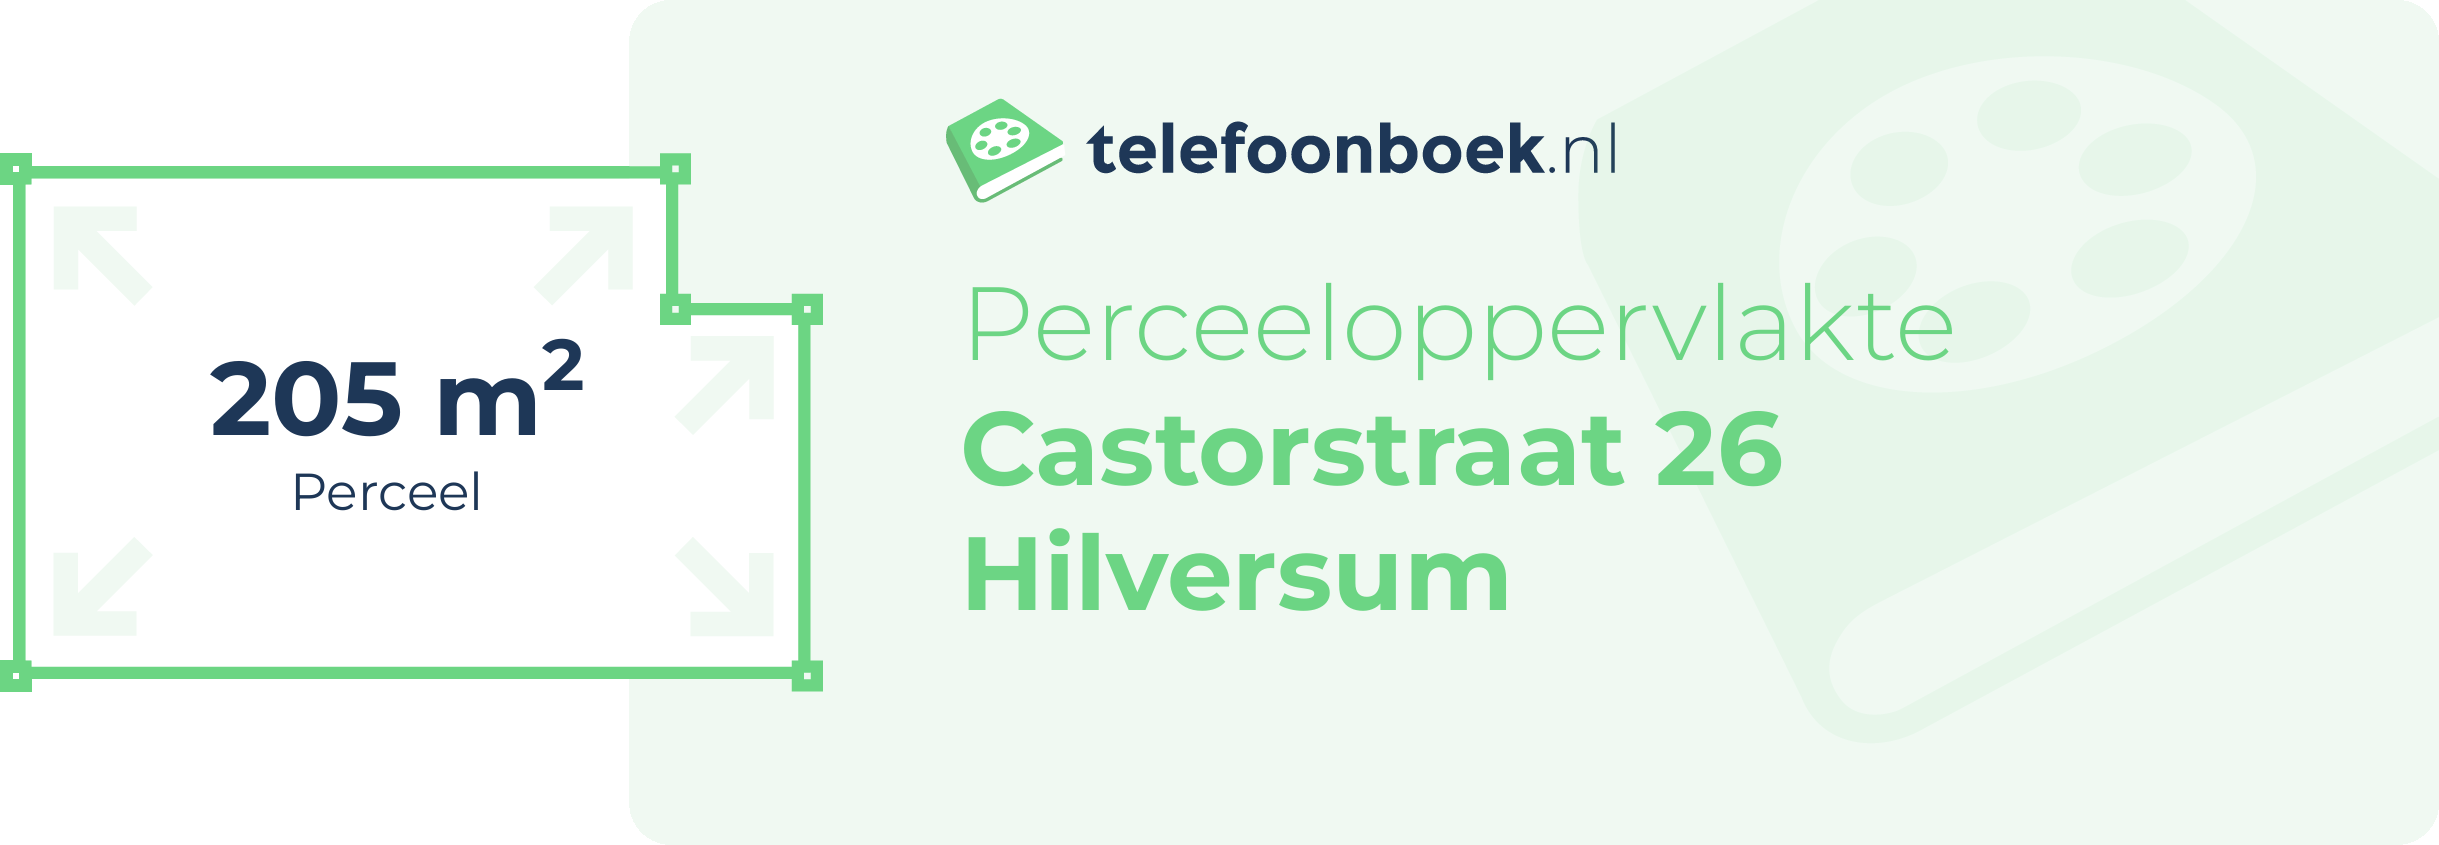 Perceeloppervlakte Castorstraat 26 Hilversum